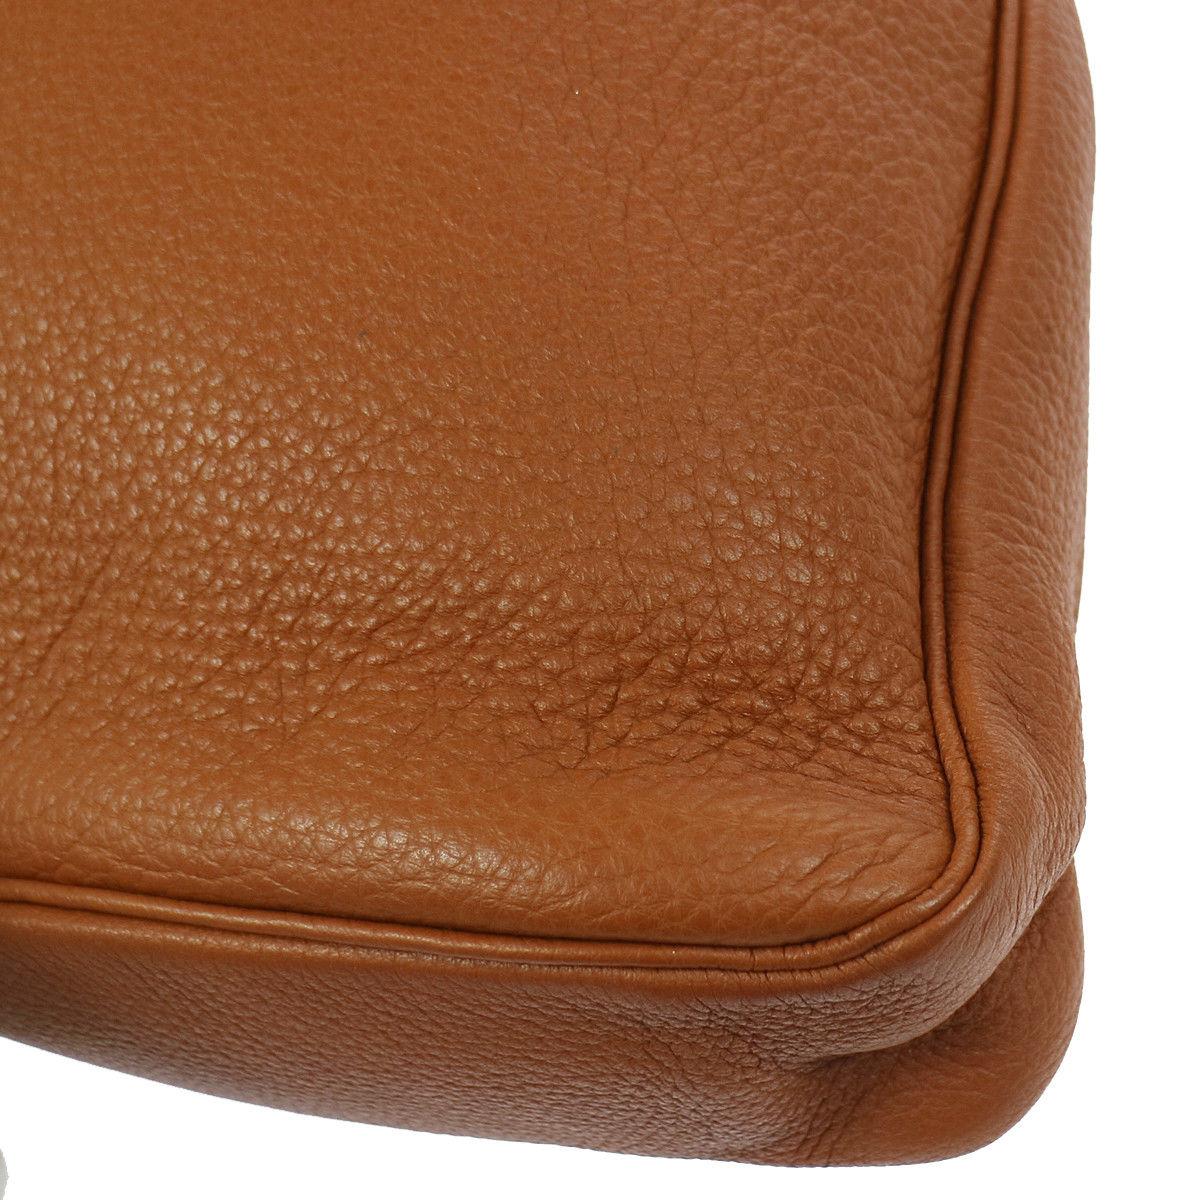 Brown Hermes Cognac Leather Large Hobo Style Carryall Shoulder Bag